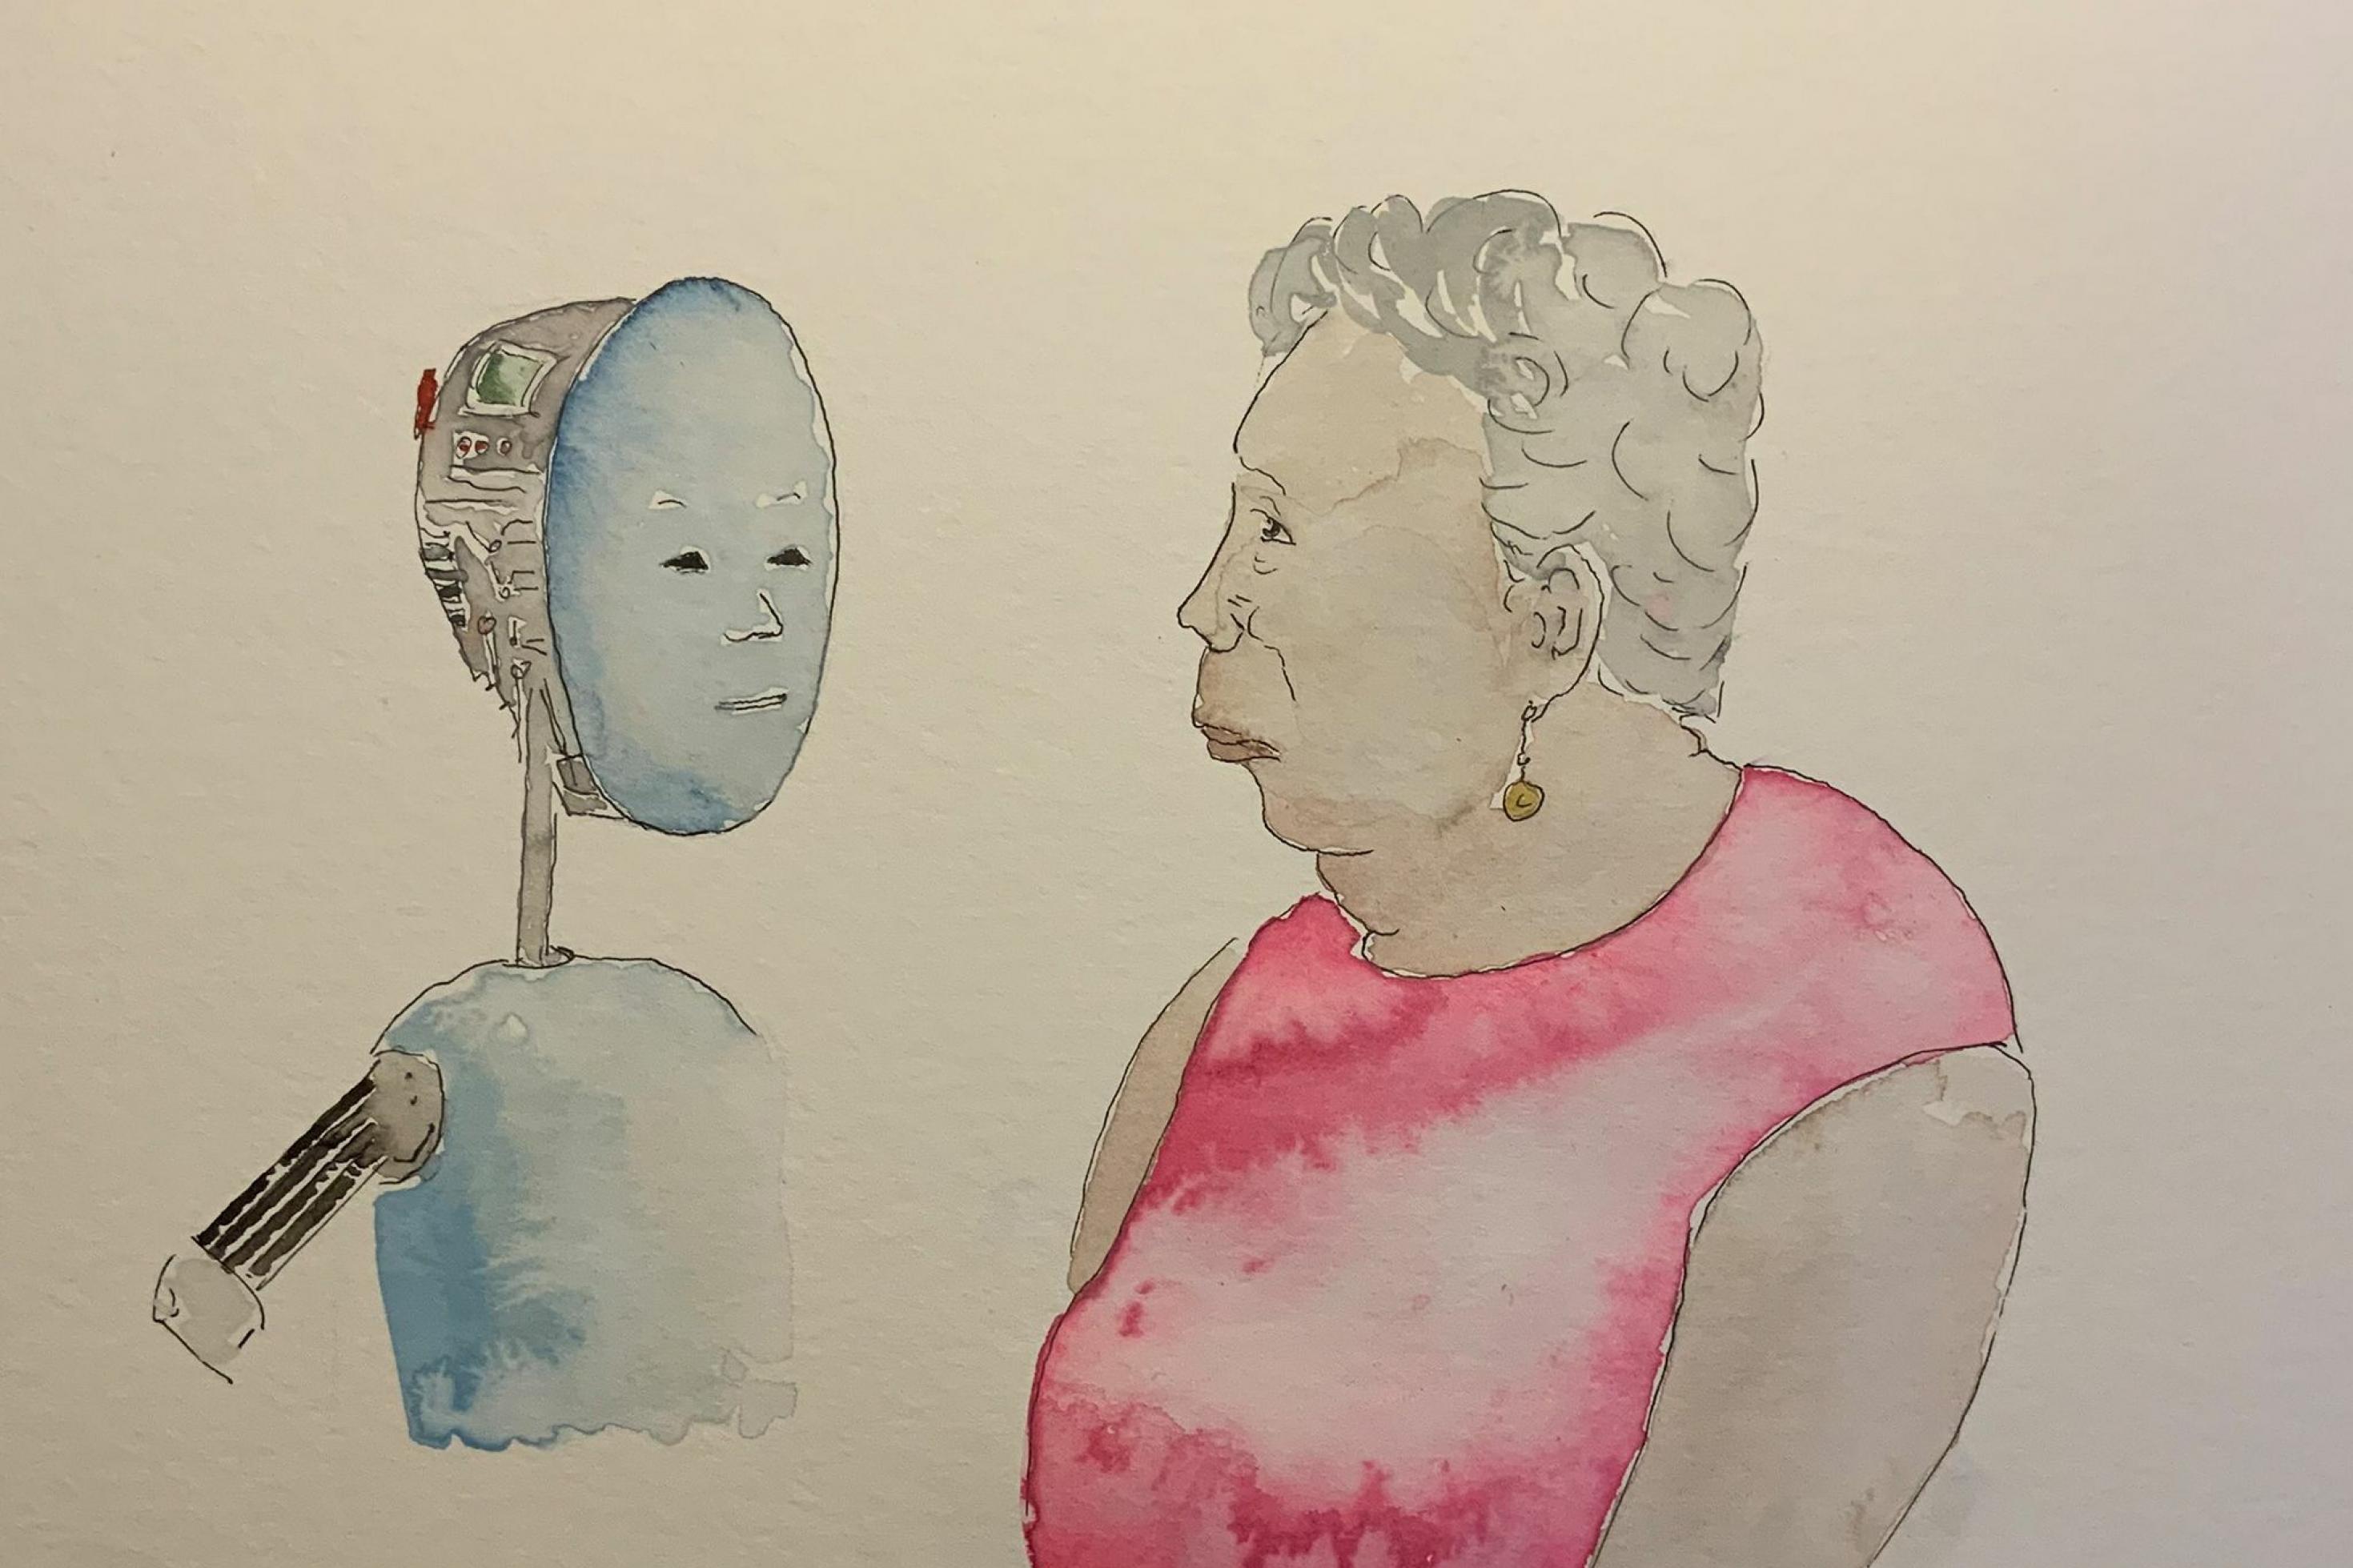 Die Zeichnung zeigt eine alte Dame, die einen Roboter mit einem menschlichen Gesicht anschaut.